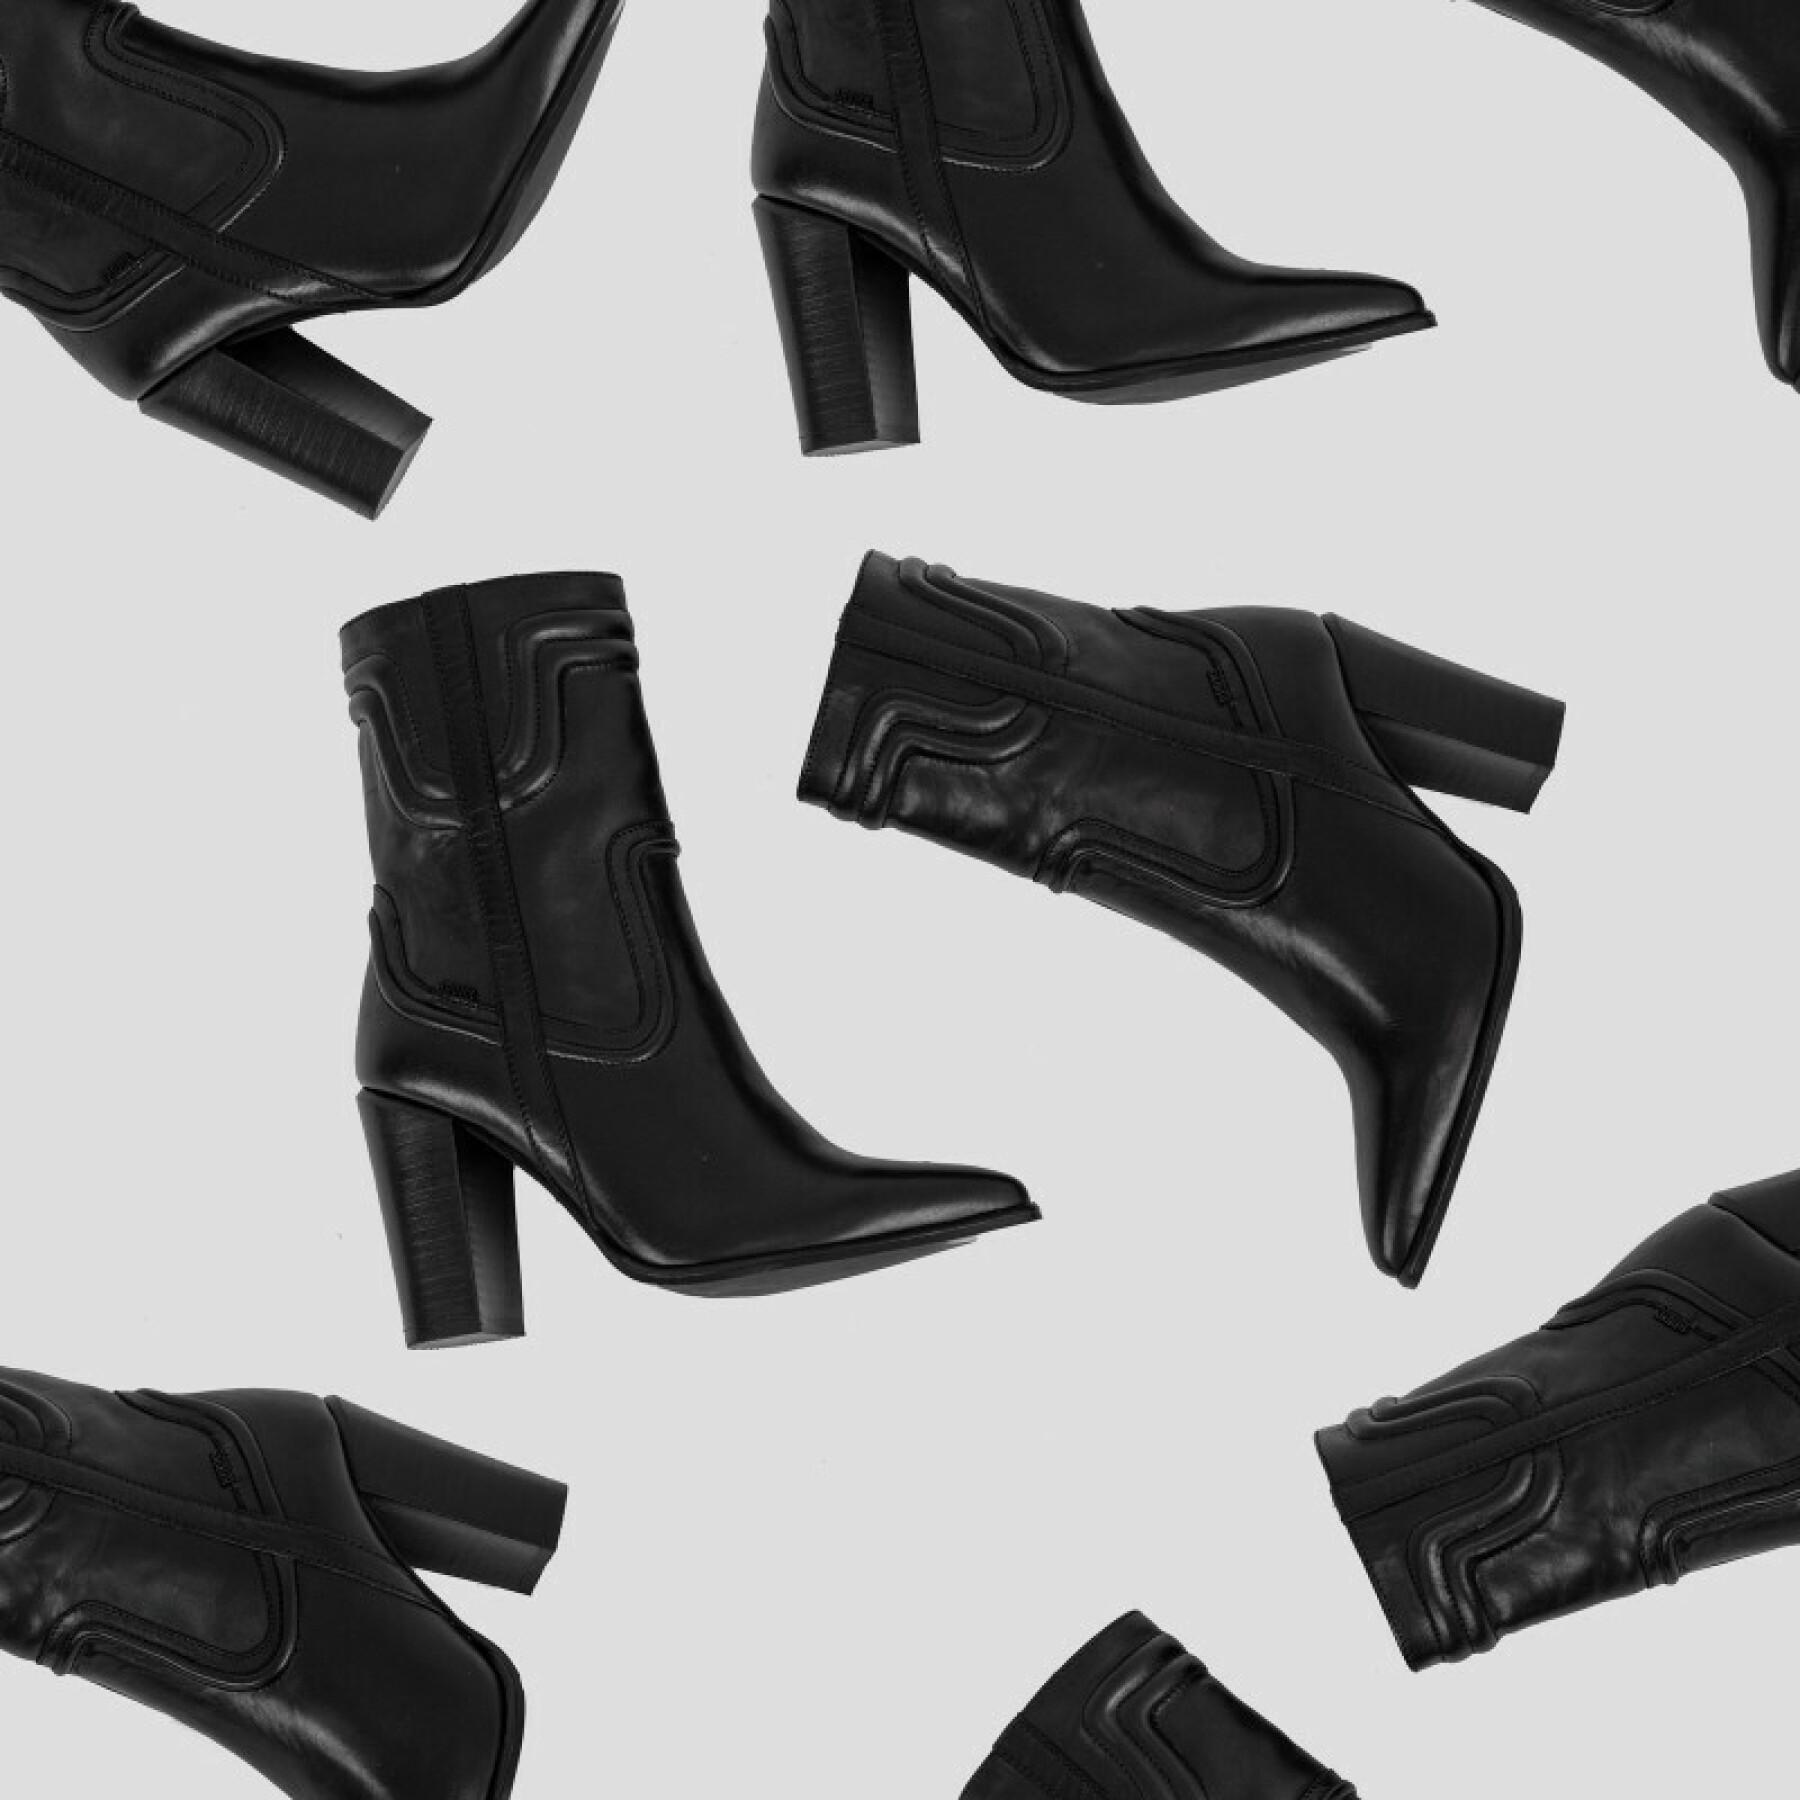 Women's boots Bronx 34199-A-01